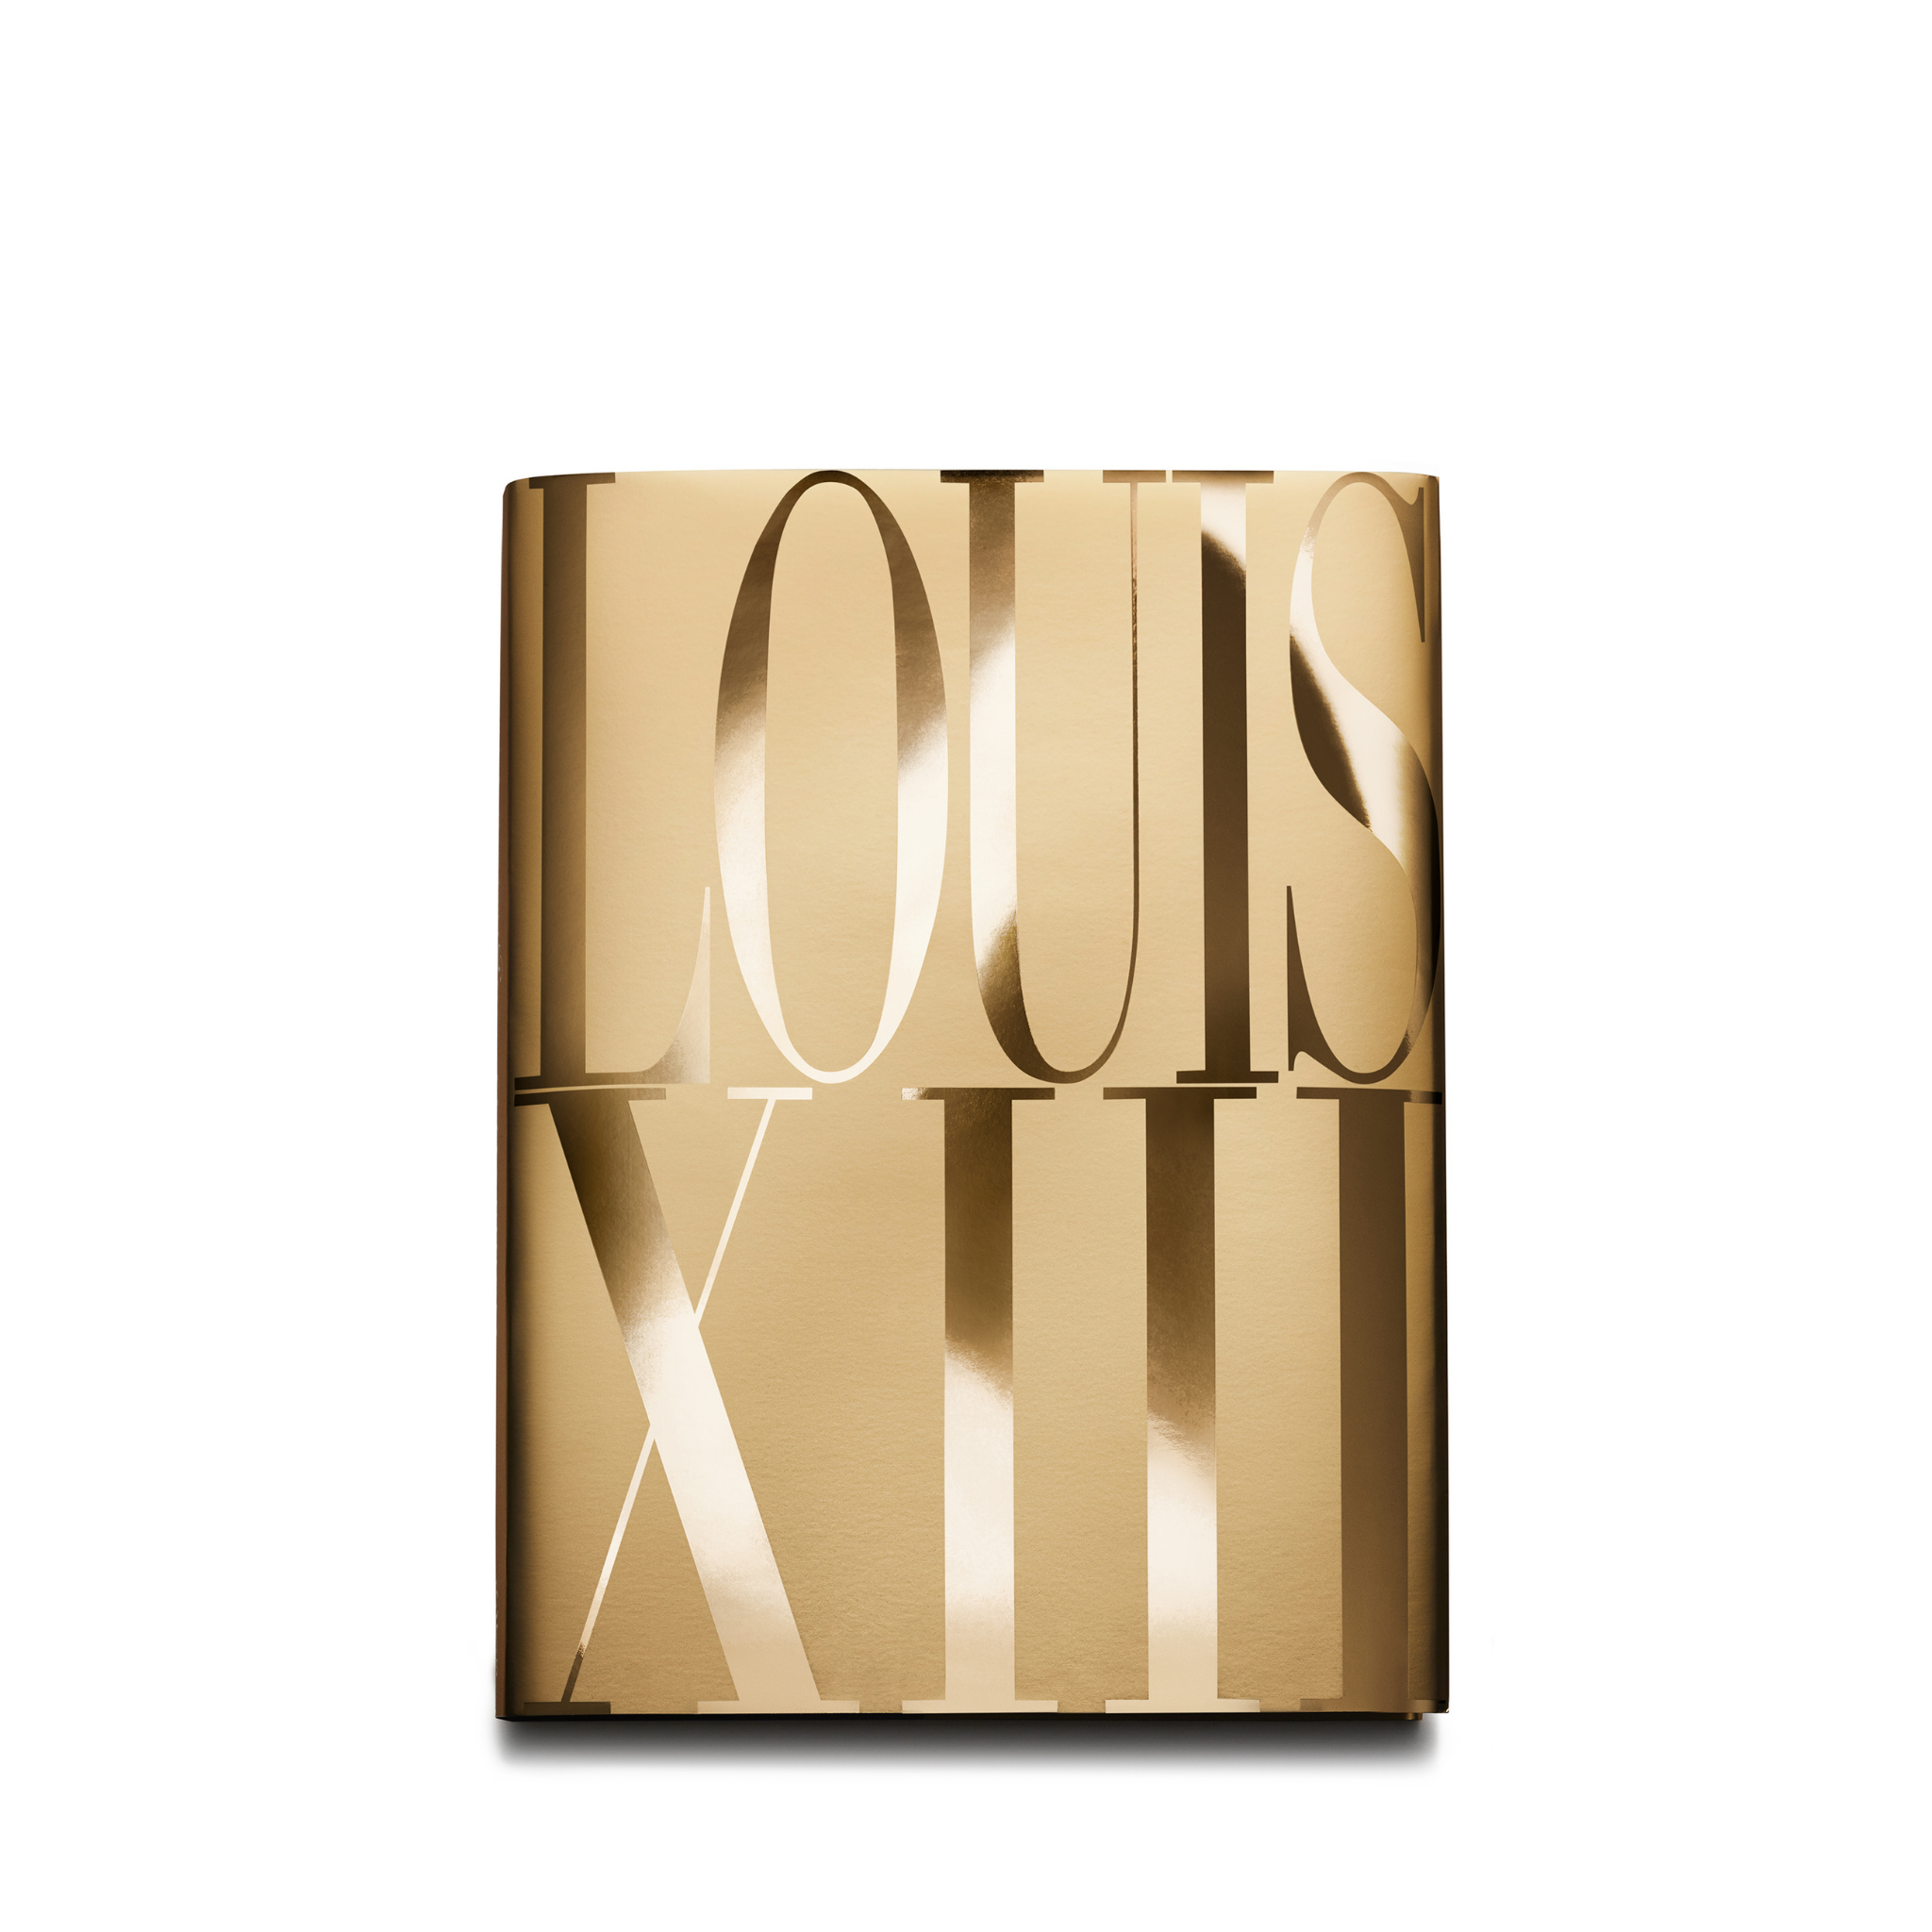 Louis XIII Cognac: the Thesaurus Hb: Louis XIII Cognac [Book]